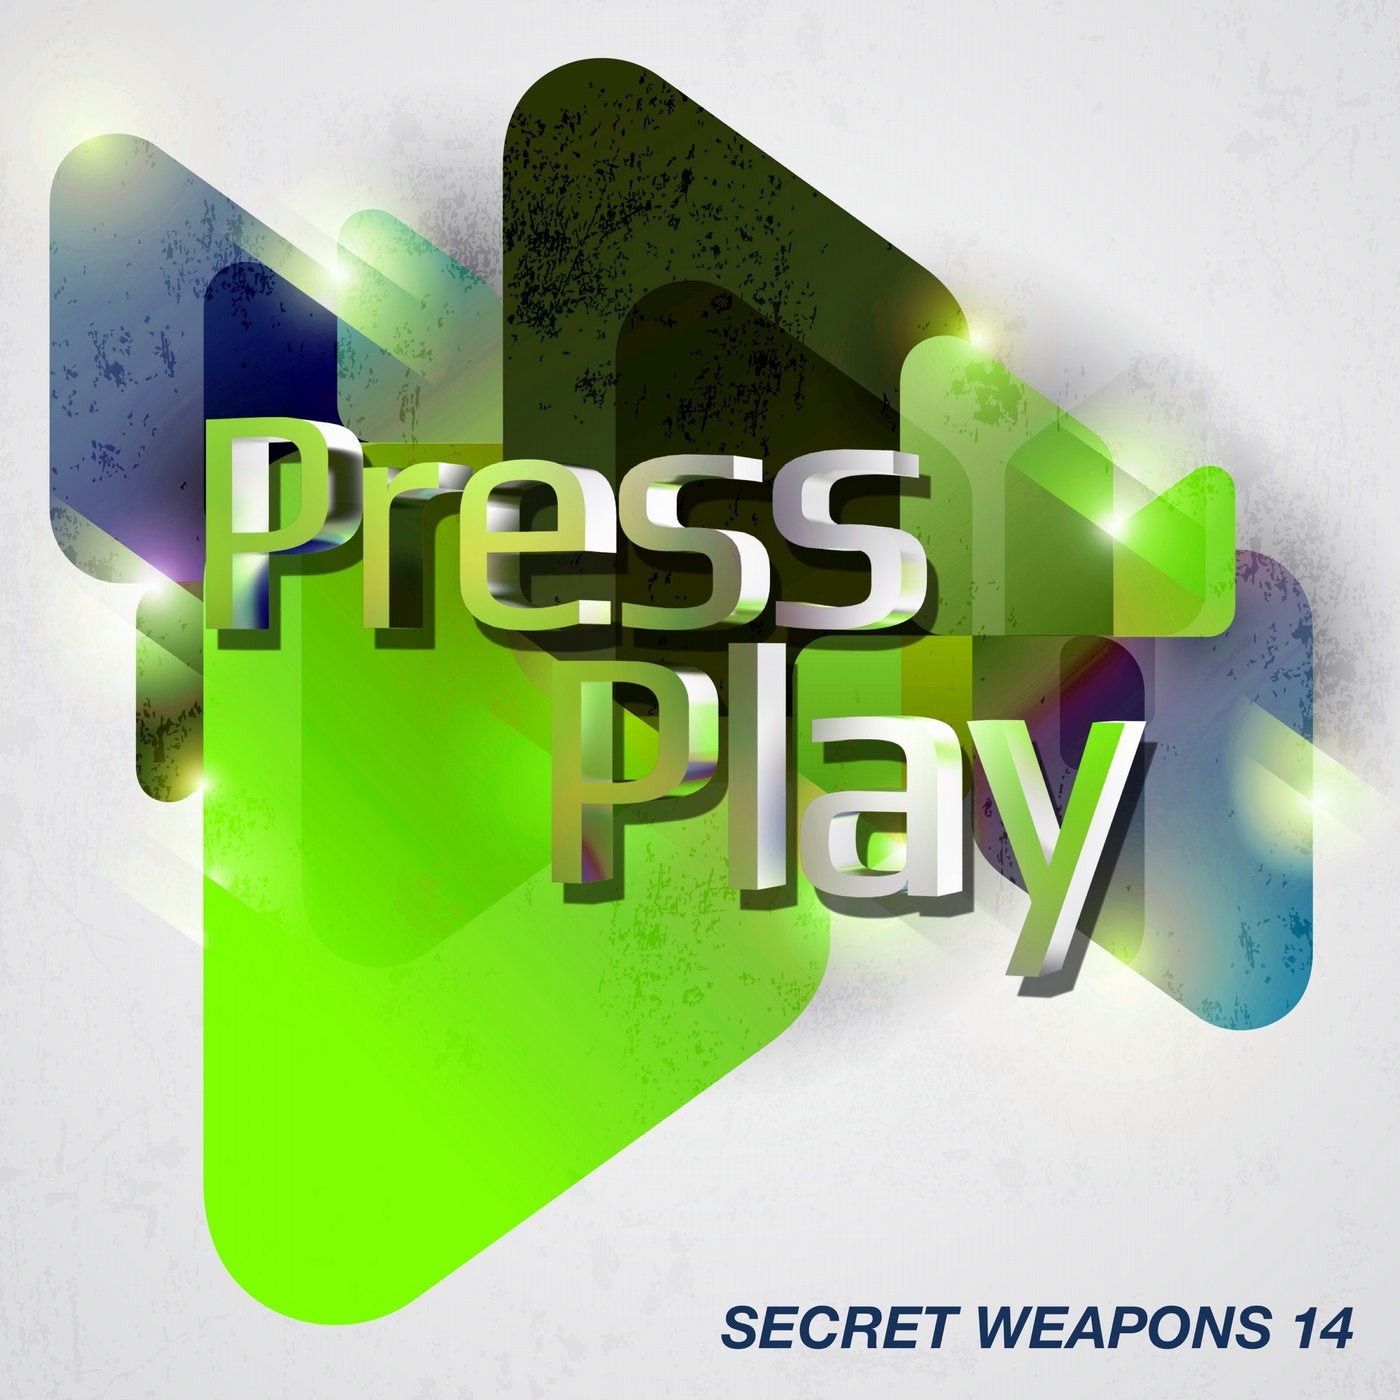 Secret Weapons 14